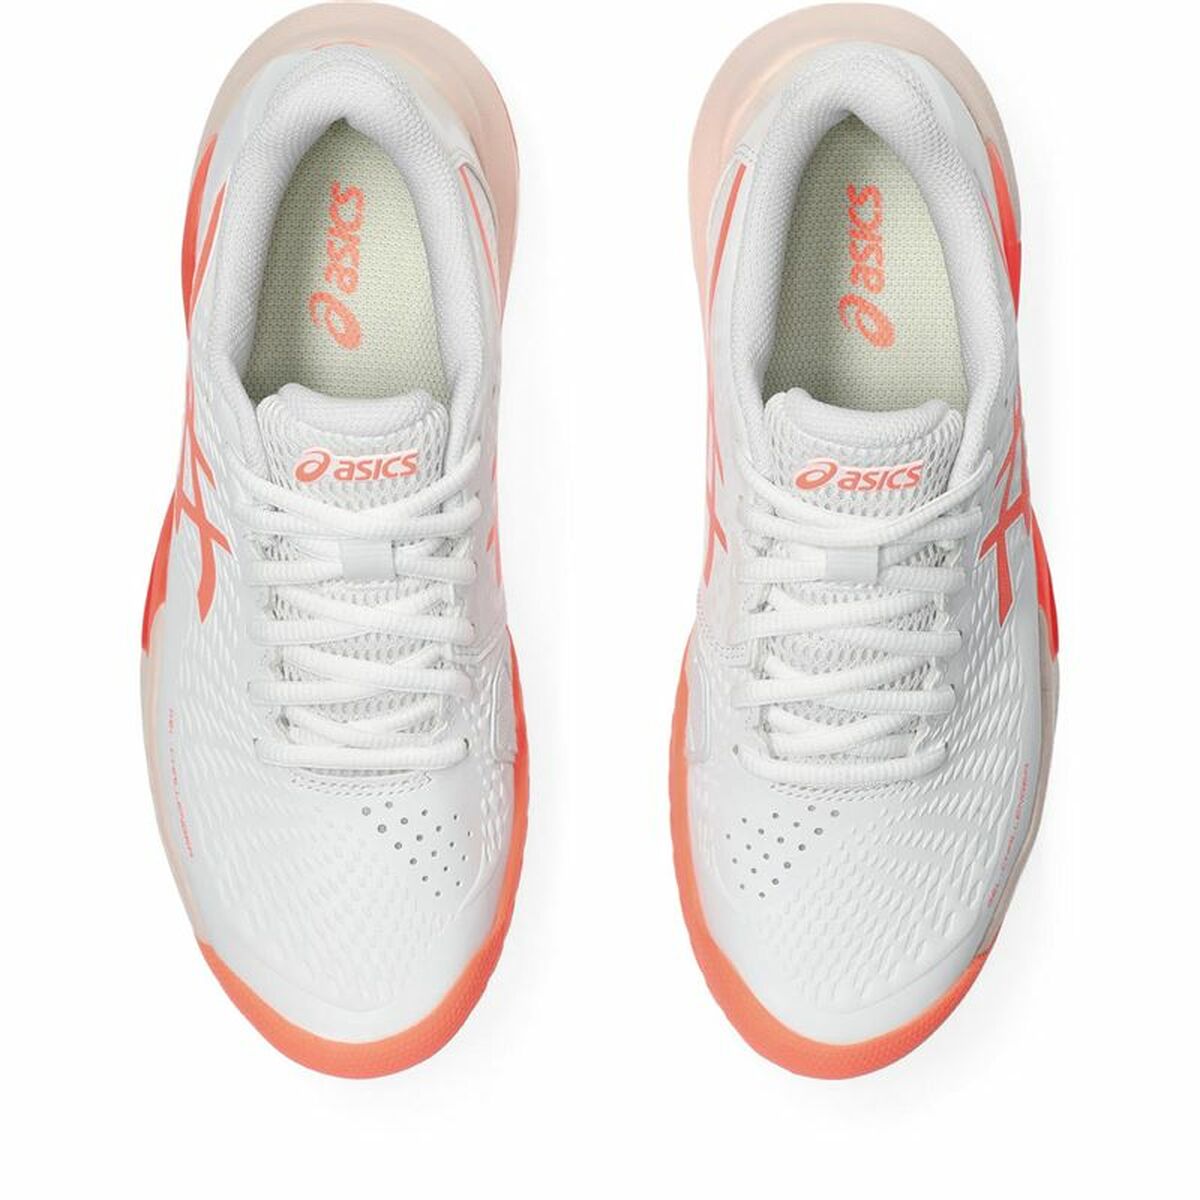 Chaussures de Tennis pour Femmes Asics Gel-Challenger 14 Blanc Orange